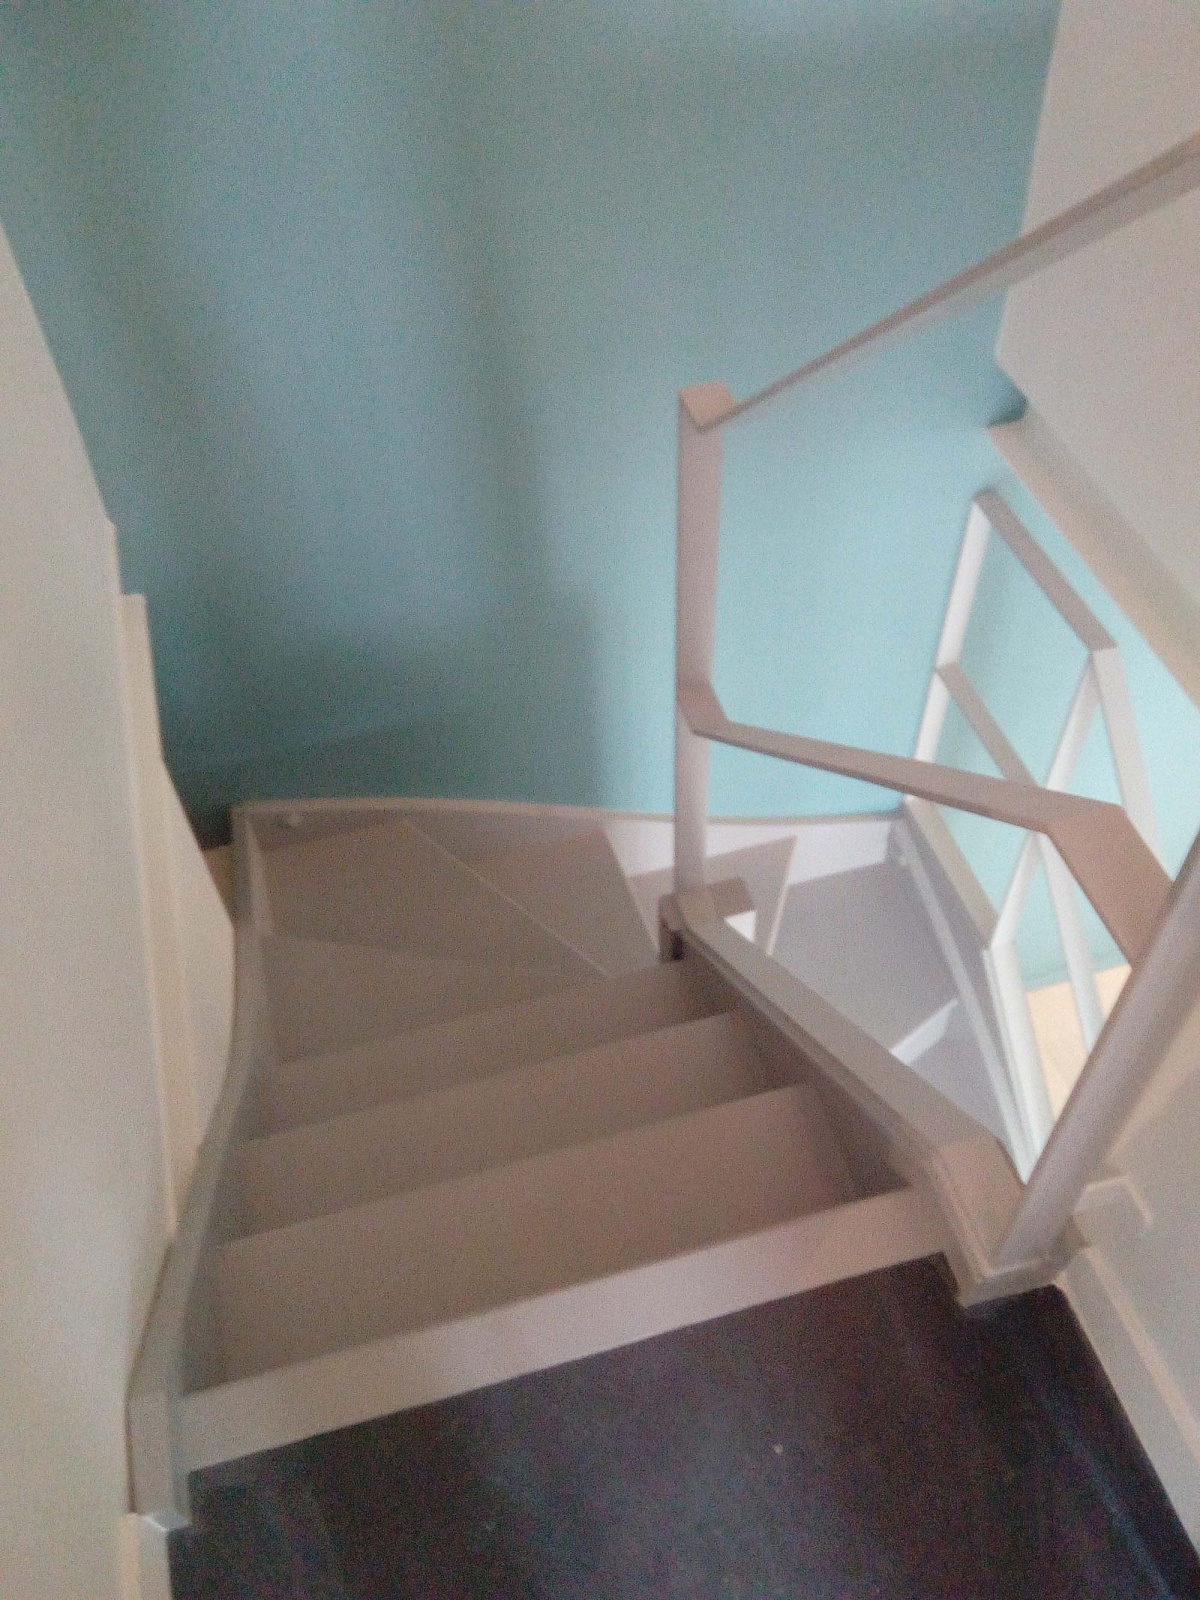 Appartement sur trois niveaux : escalier 2me tage